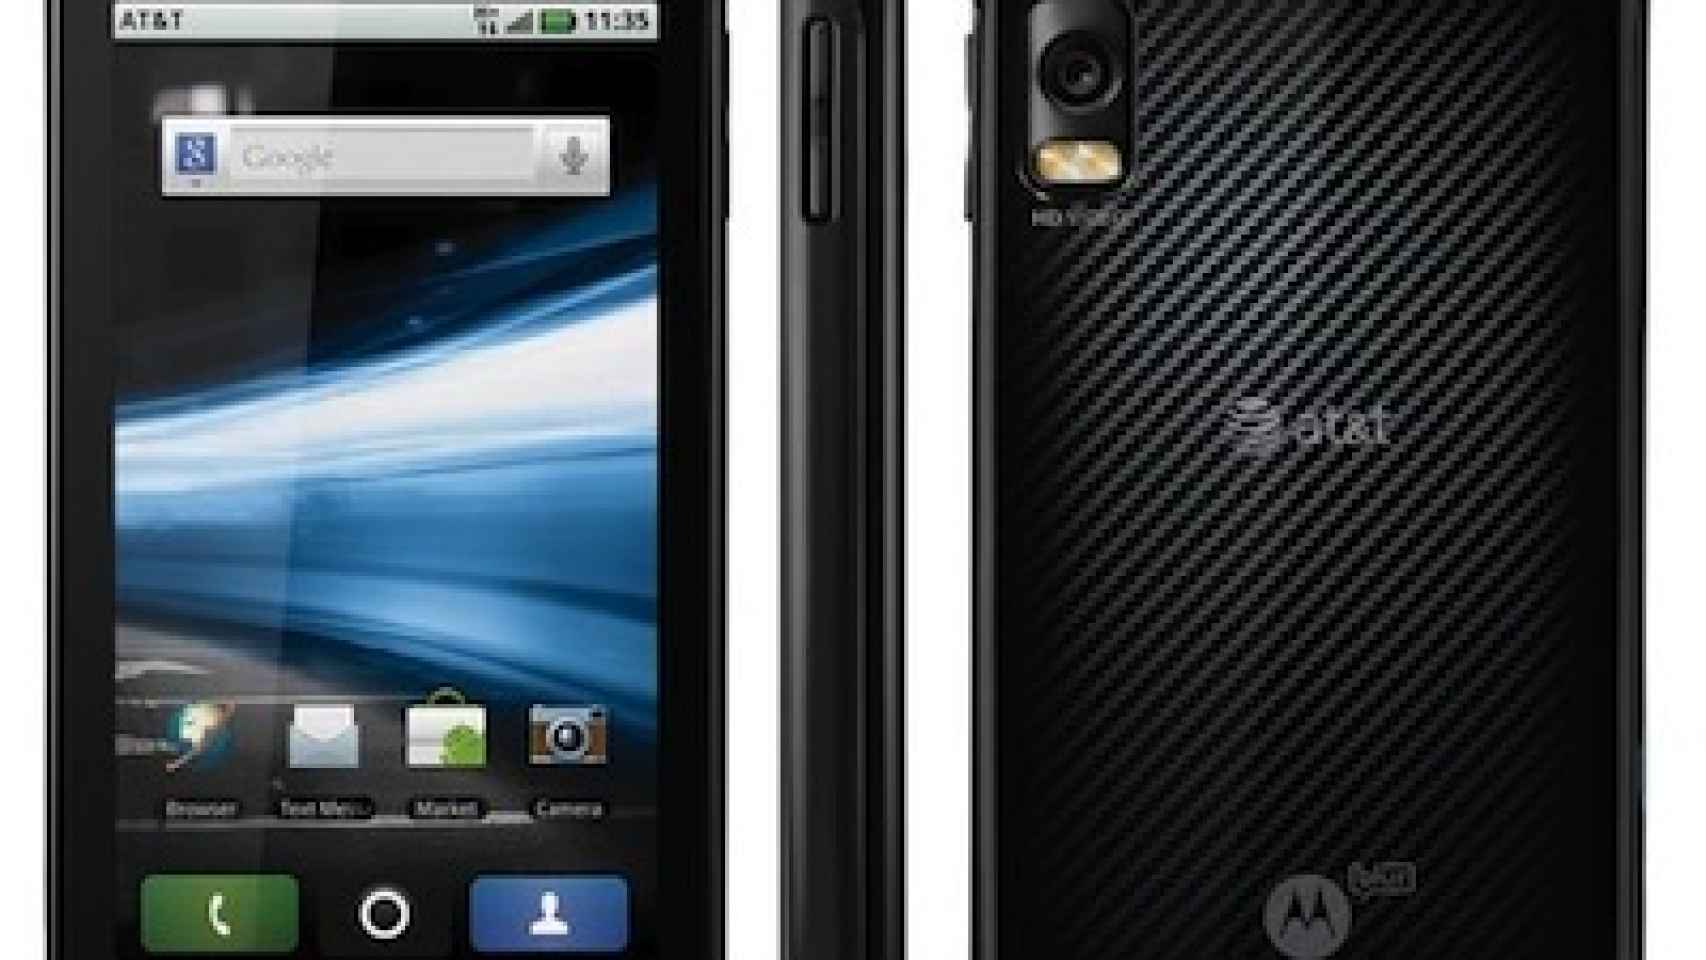 Nuevo vídeo promocional del Motorola Atrix 4G